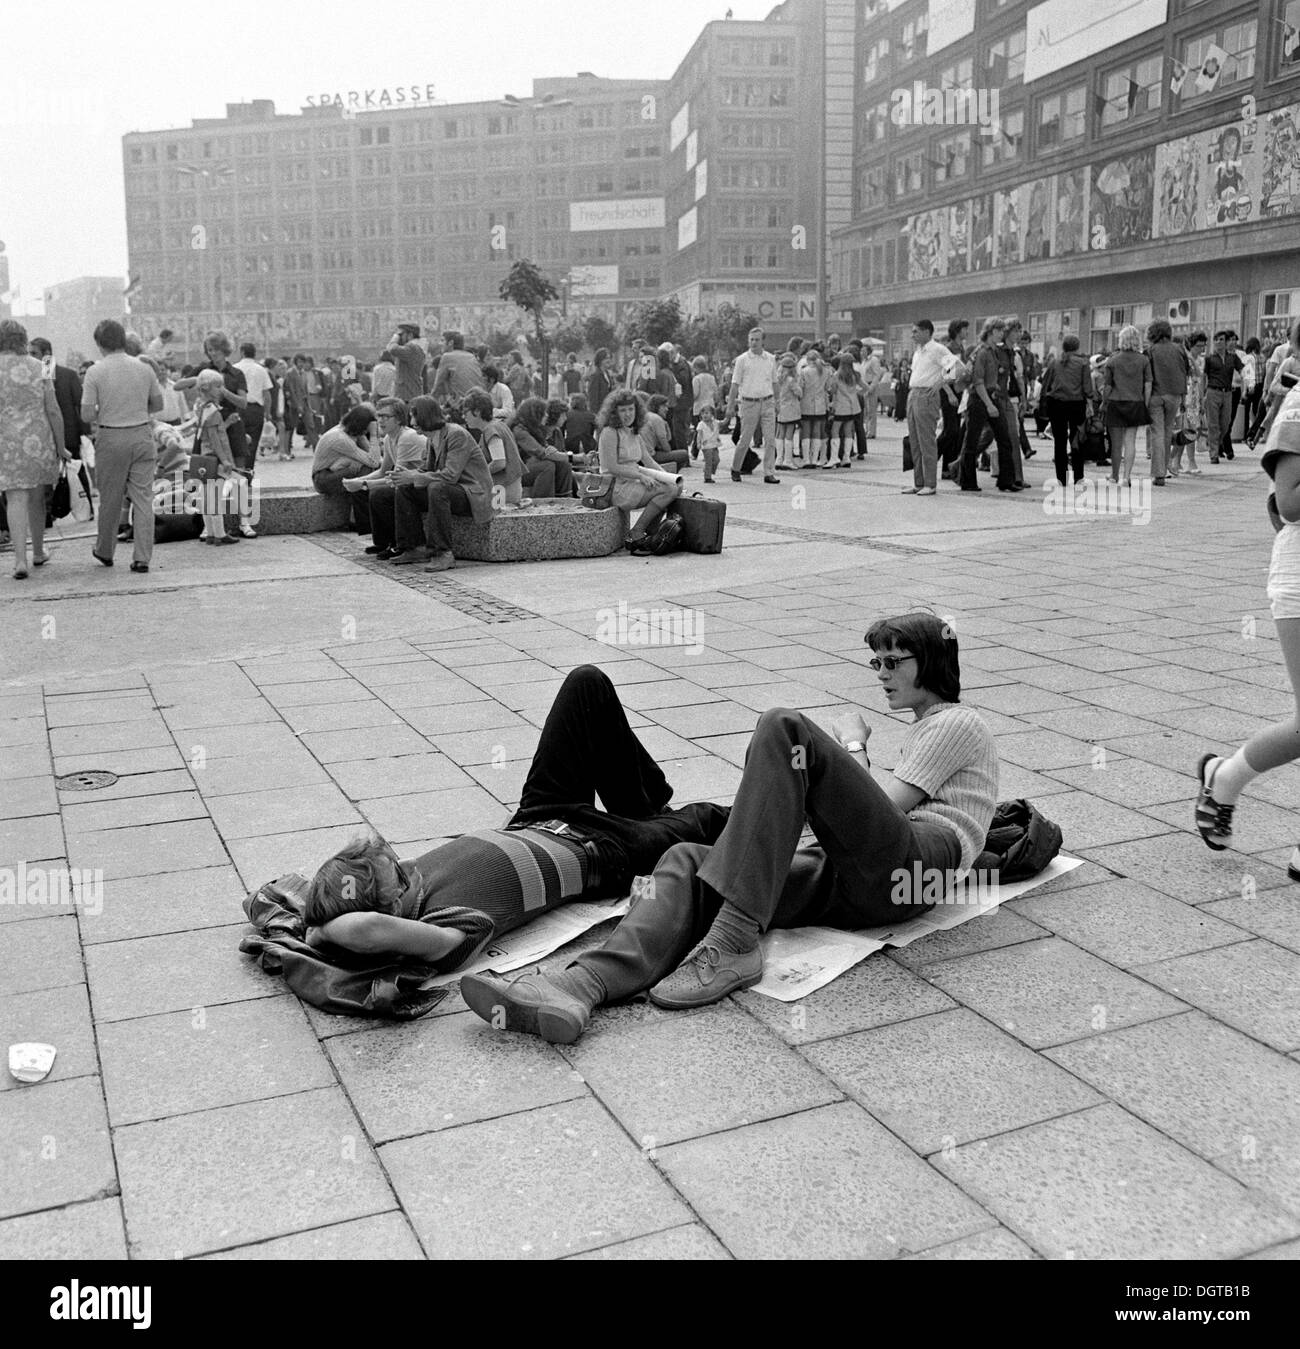 Weltfestspiele der Jugend, a communist youth festival, Alexanderplatz square, 1973, Berlin, GDR, East Germany Stock Photo